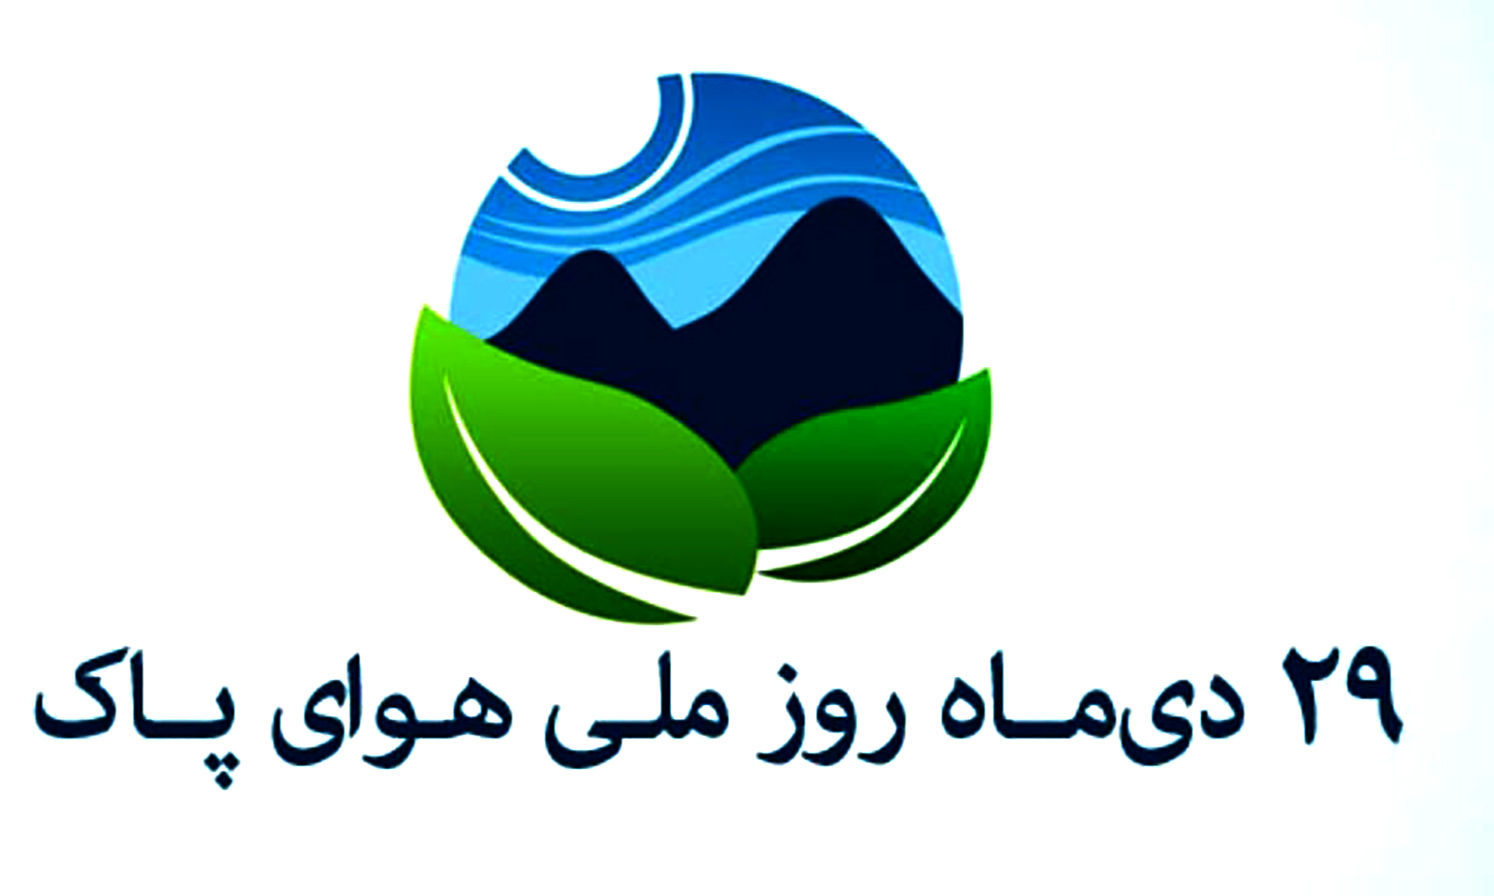 اعلام برنامه های روز ملی هوا پاک در کلانشهر مشهد